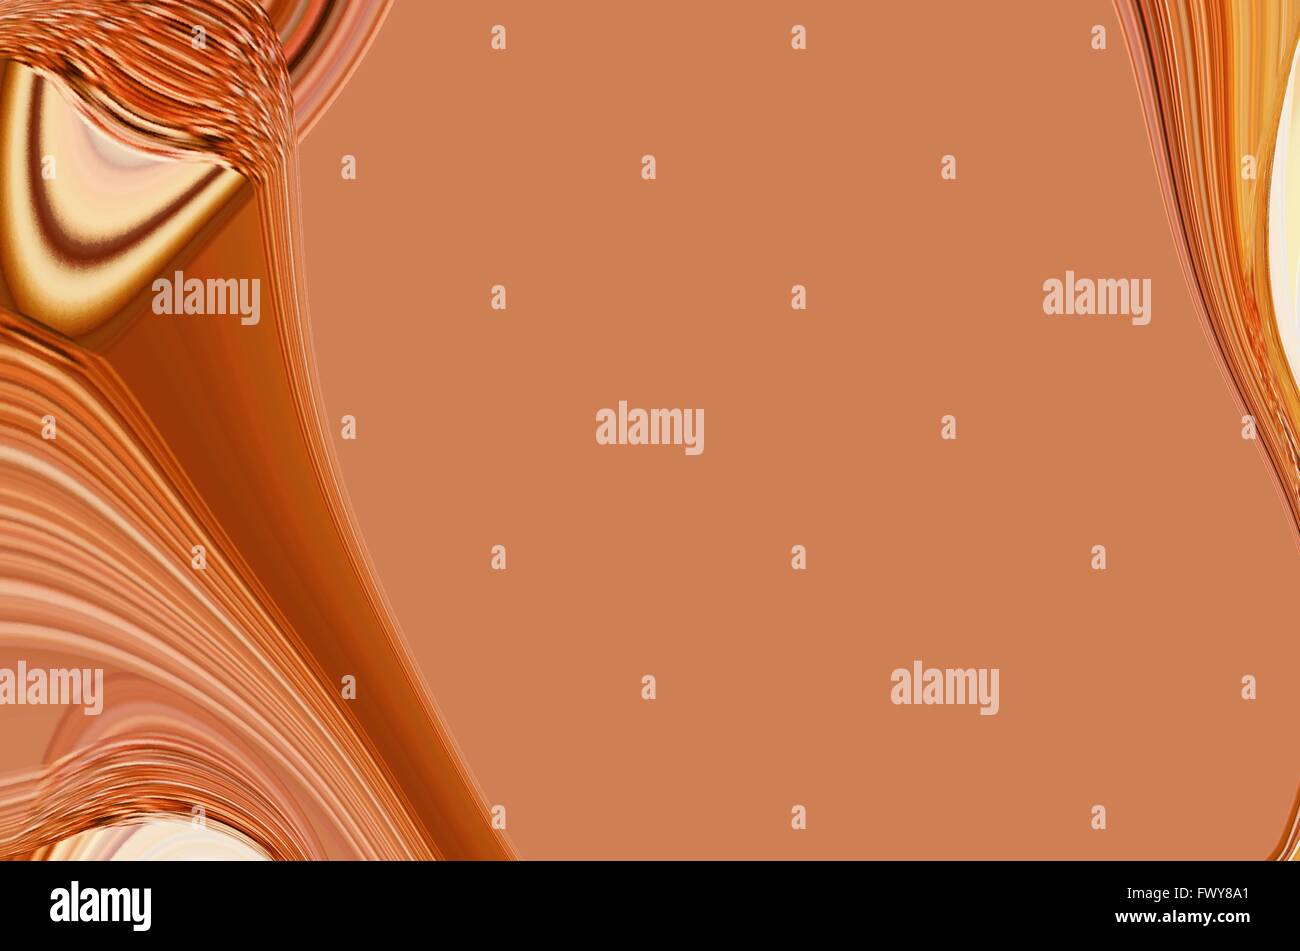 Bunte orange Wellen Hintergrund des Textfeldes ". Stockfoto